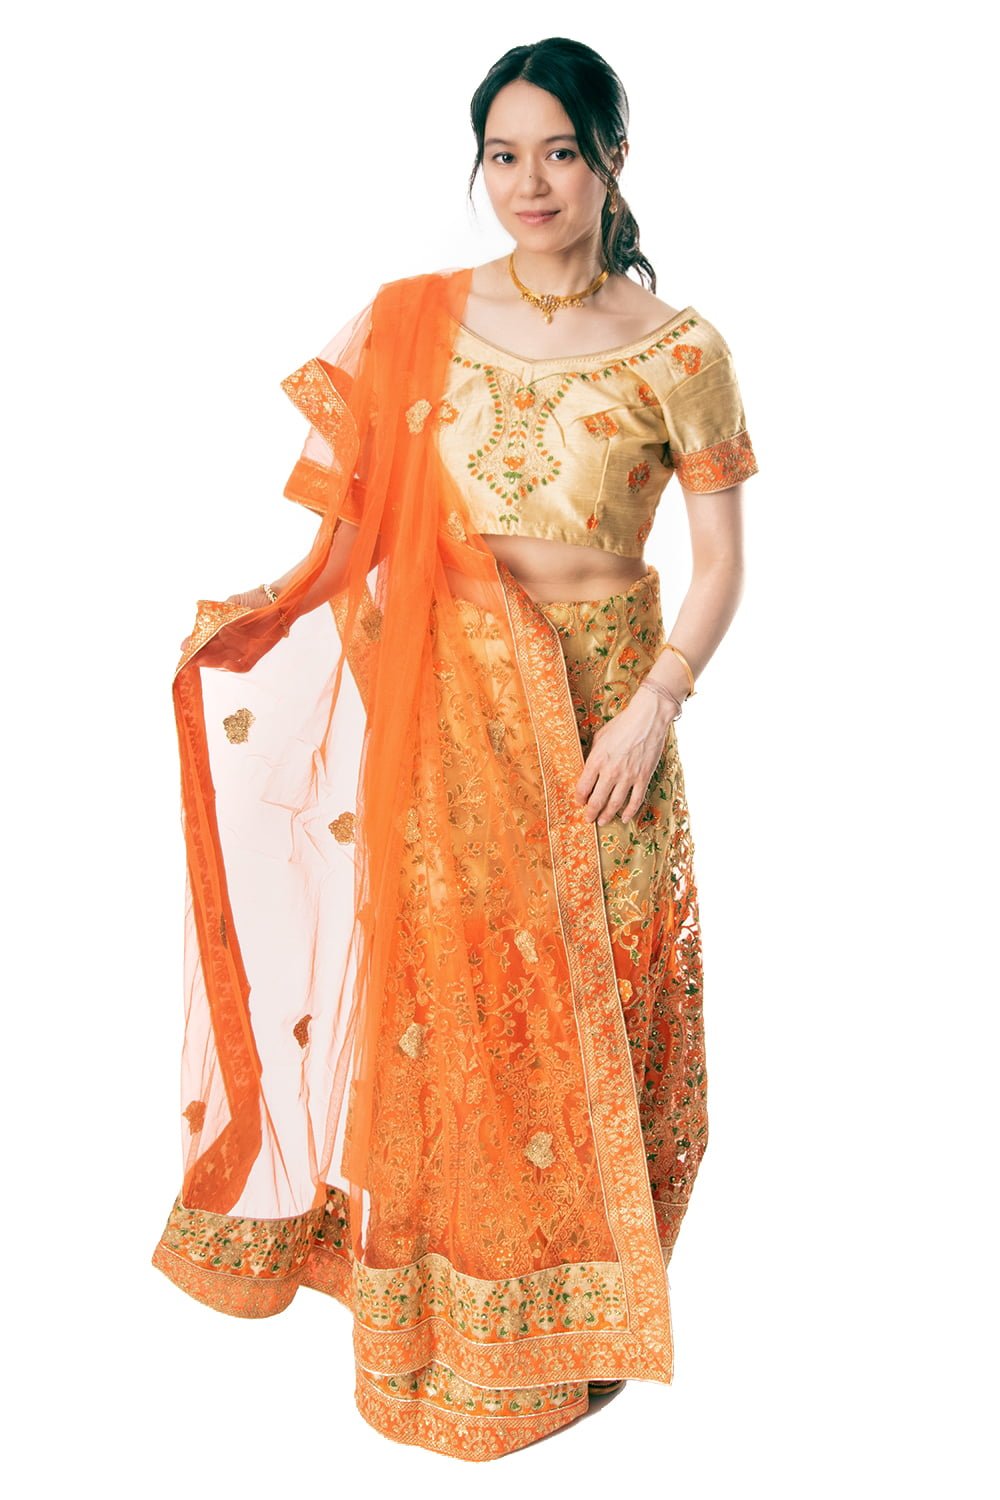 【送料無料】 インドのレヘンガドレスセット / パーティードレス コスプレ ウェディングドレス 民族衣装 TIRAKITA(ティラキタ) サリー